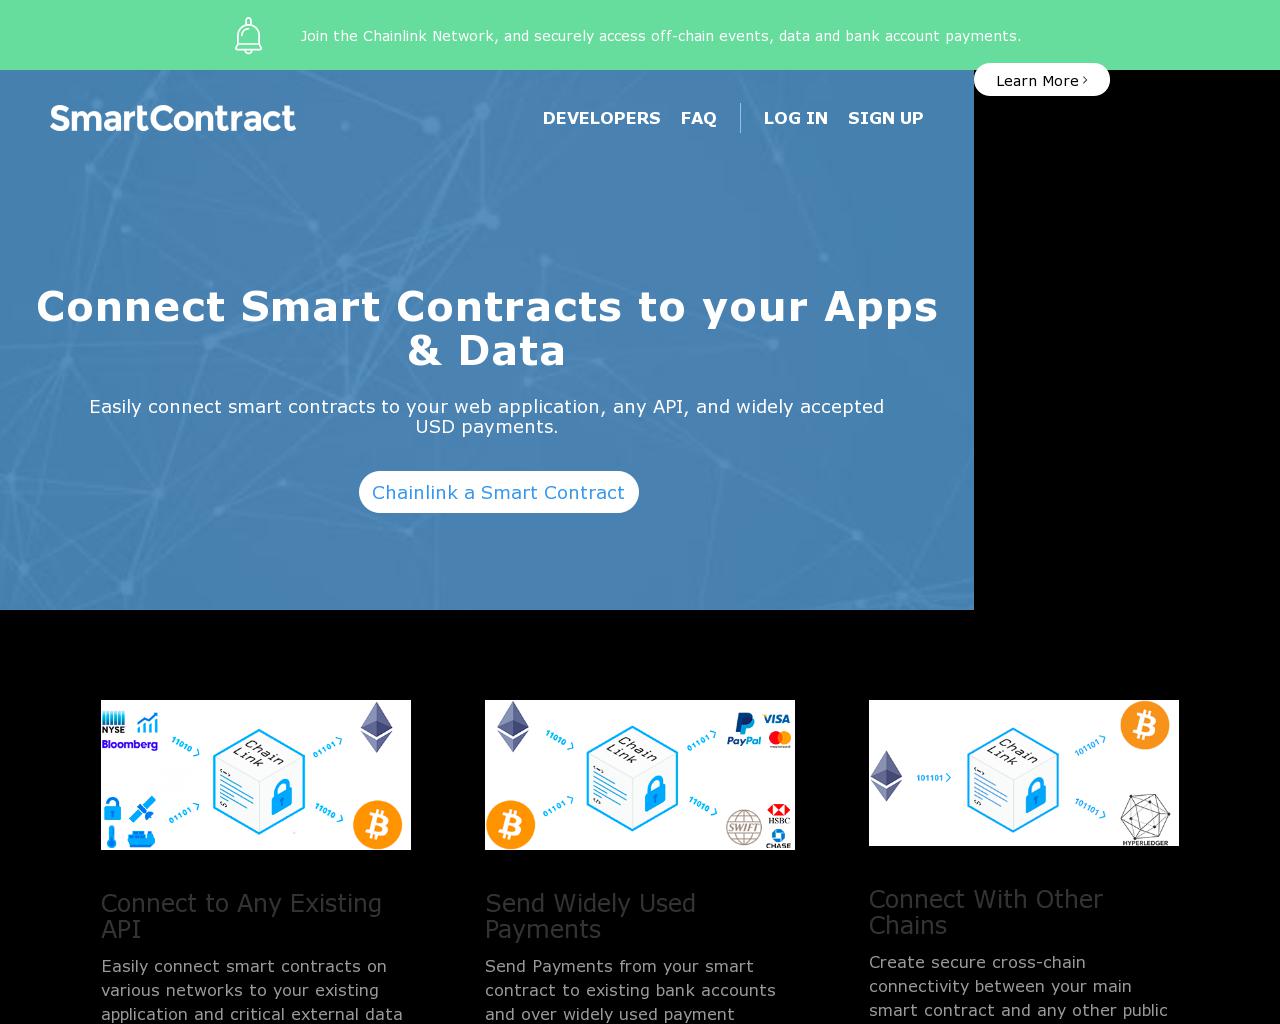 smartcontract.com